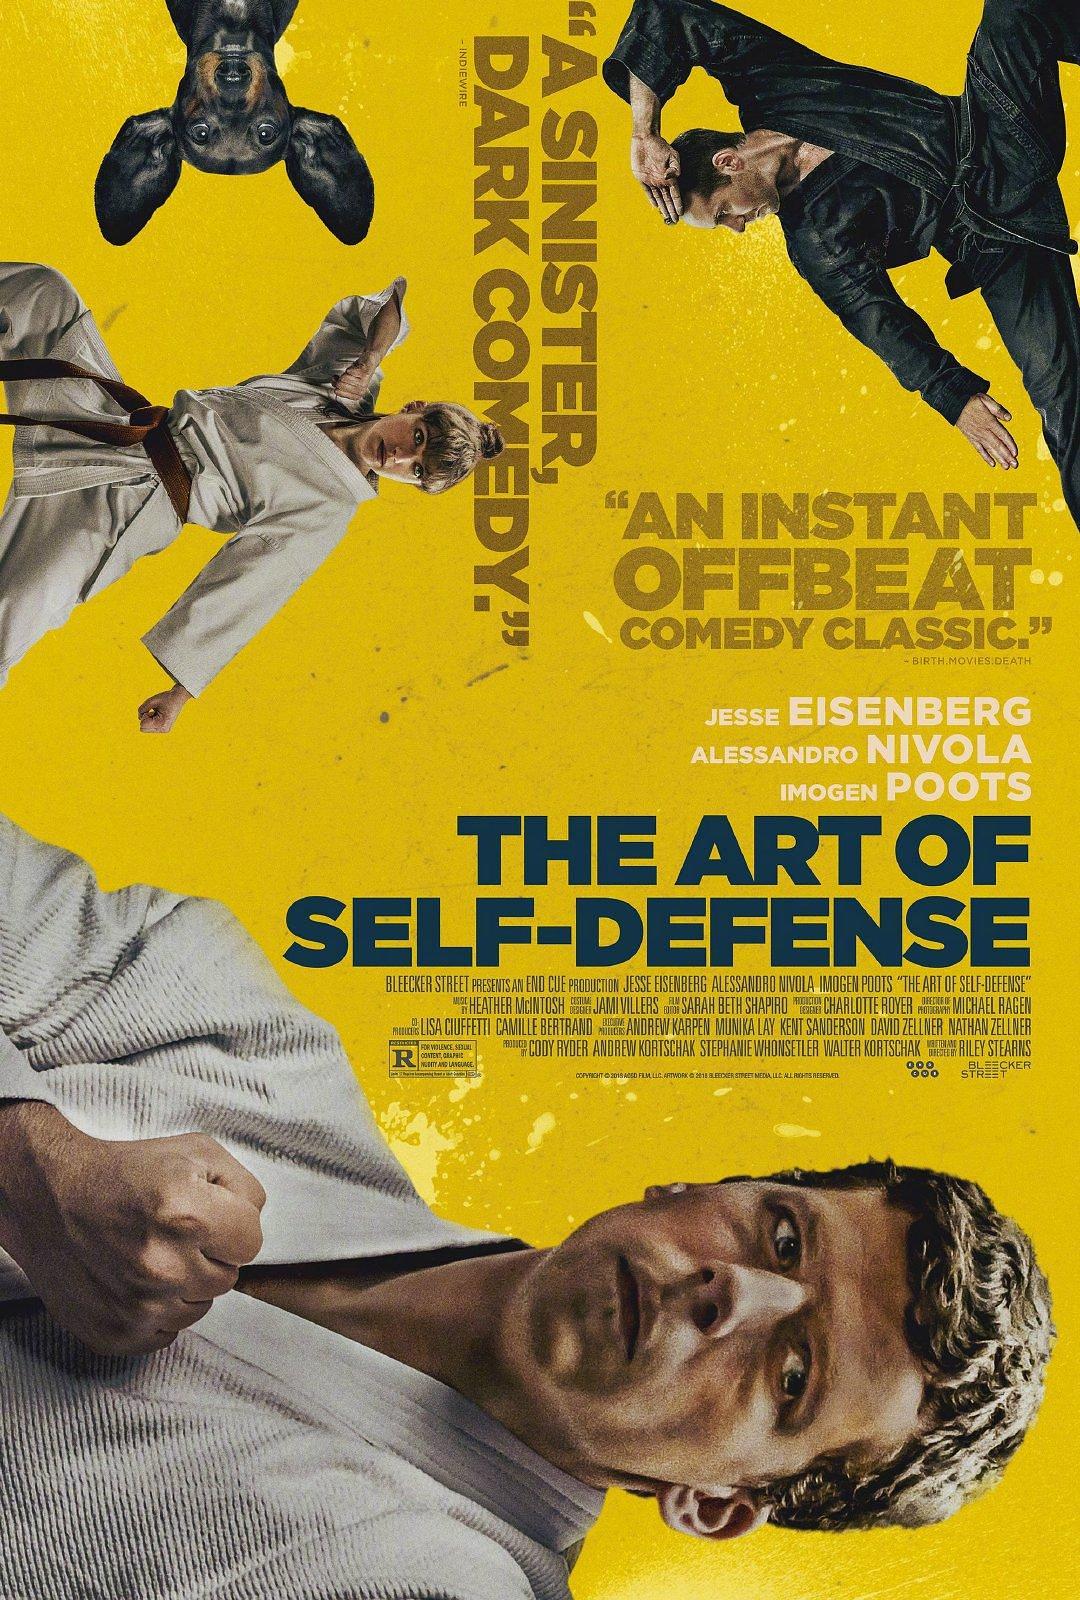 侵占艺术 The.Art.of.Self.Defense.2019.1080p.BluRay.REMUX.AVC.DTS-HD.MA.5.1-FGT 26.80GB-1.png